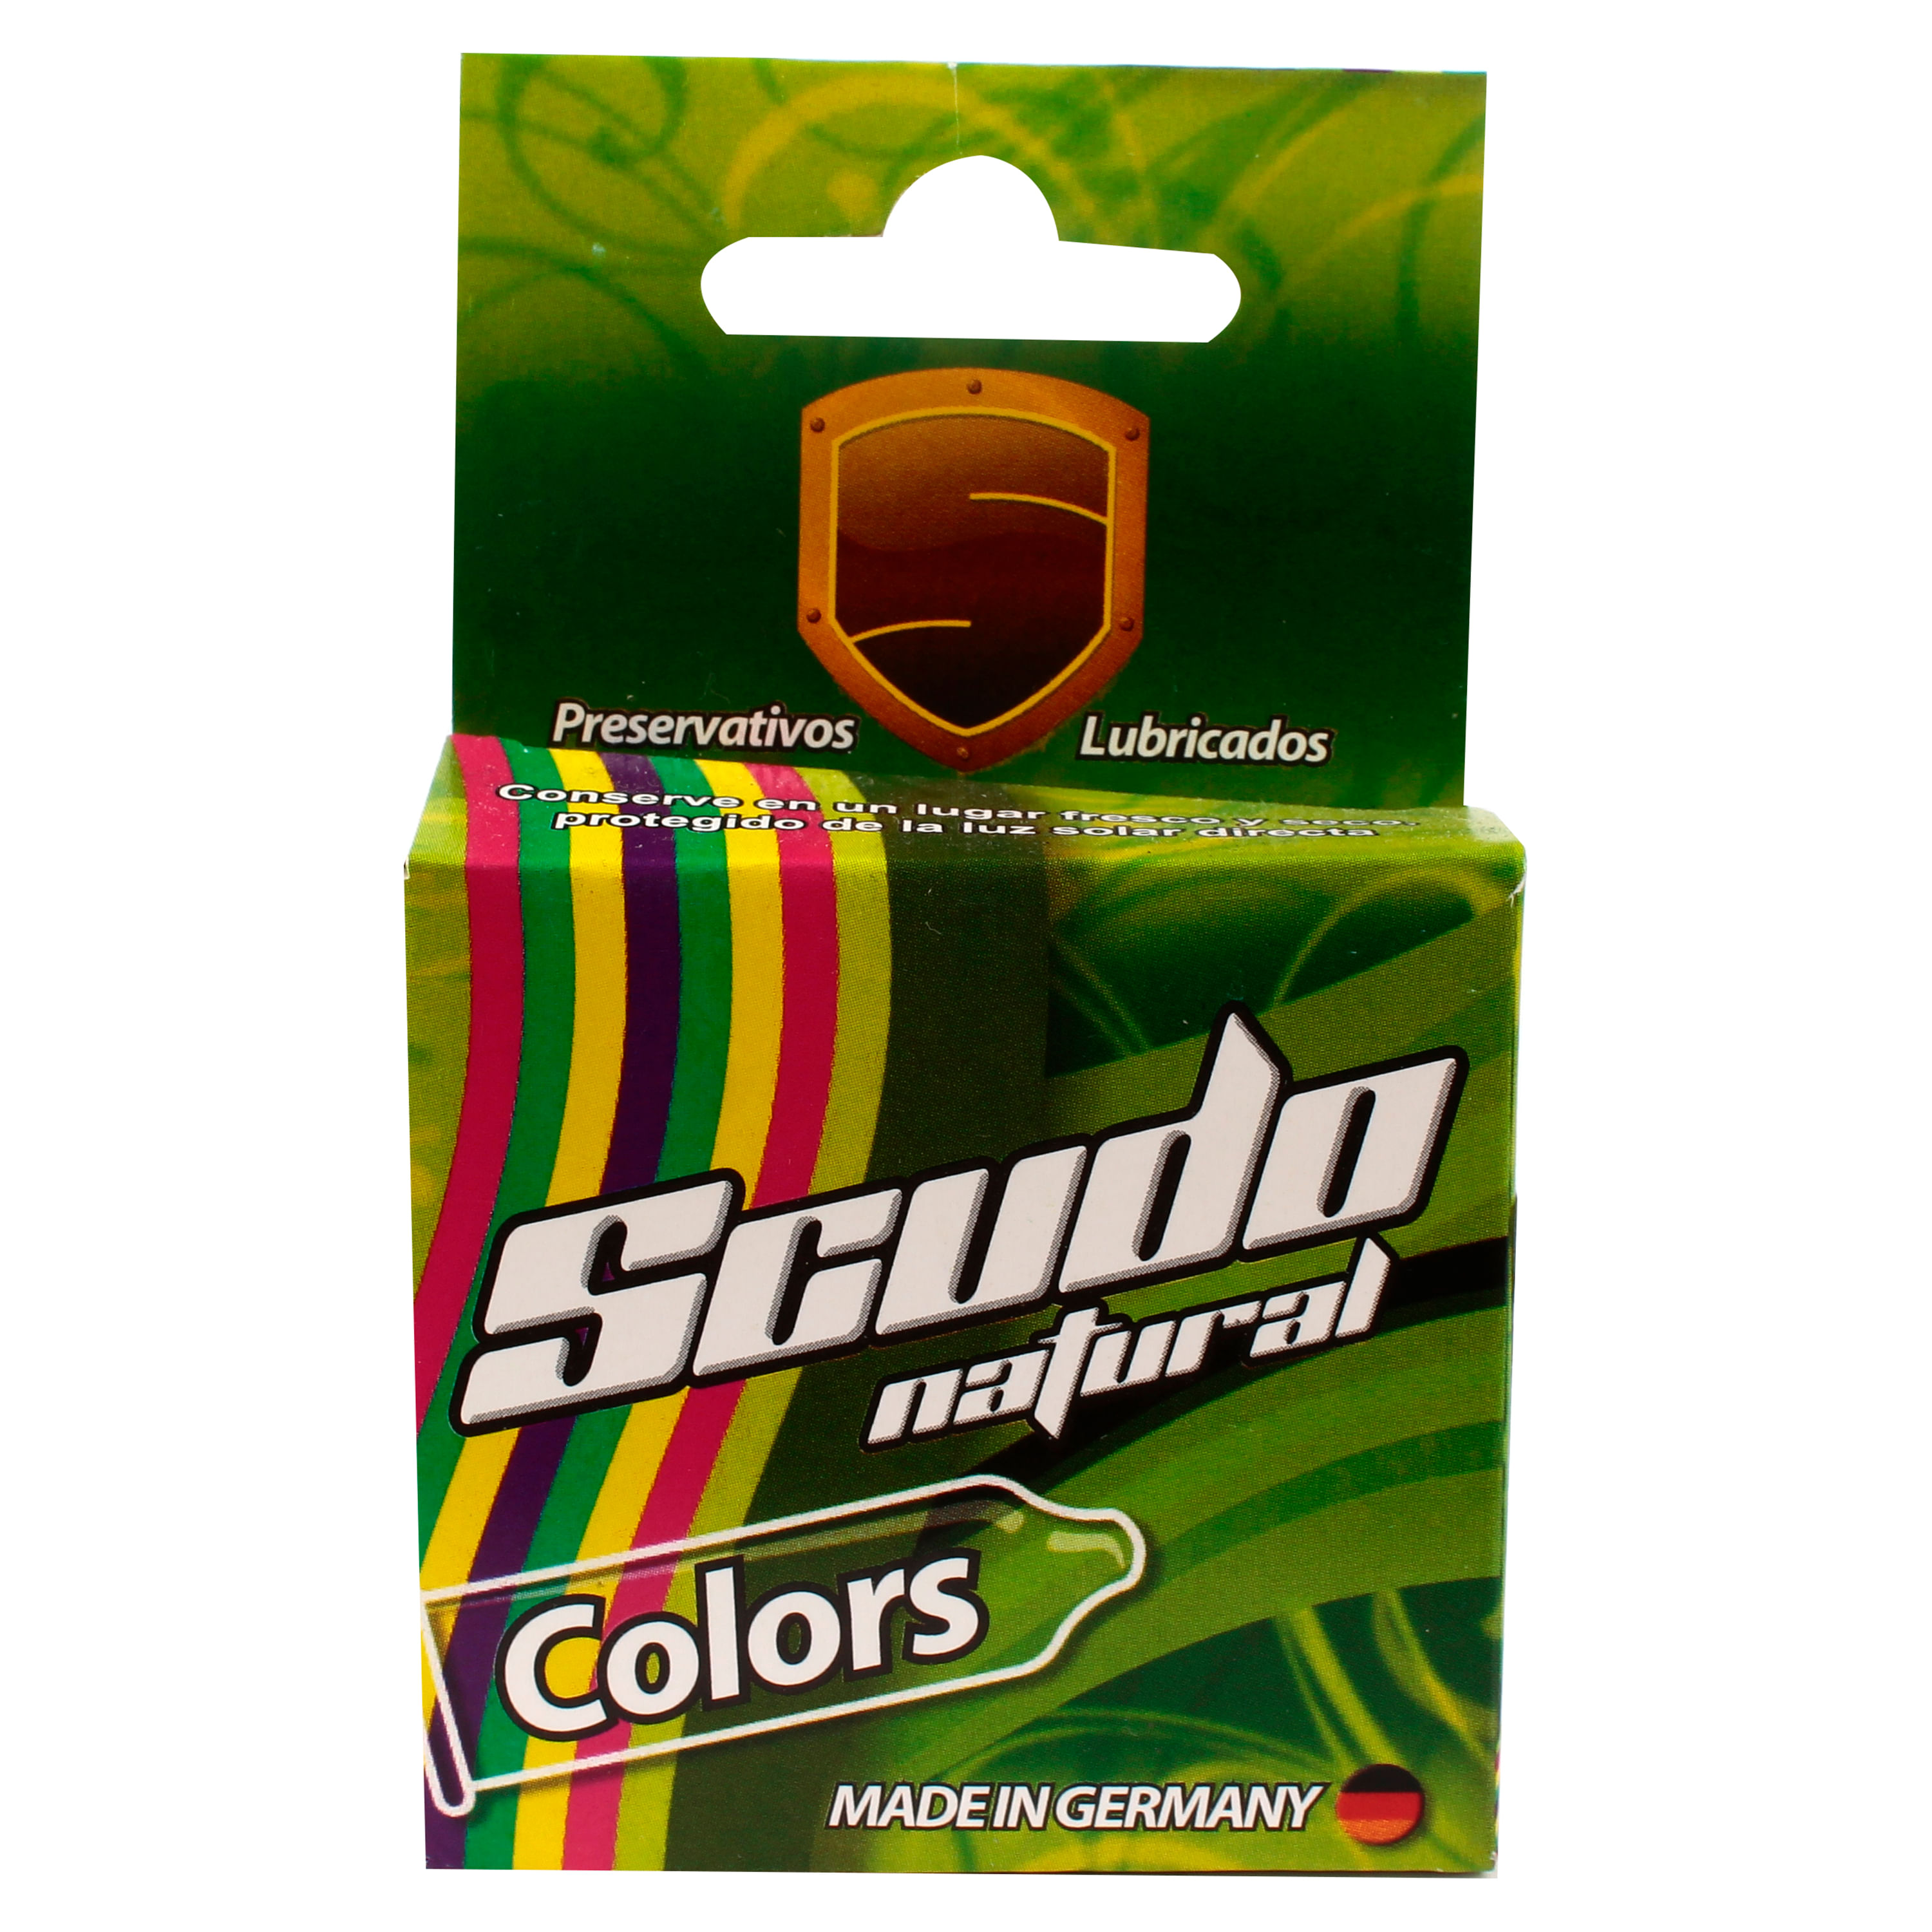 Scdo-Scdo-Colors-Una-Caja-Scdo-Scdo-Colors-1-32780